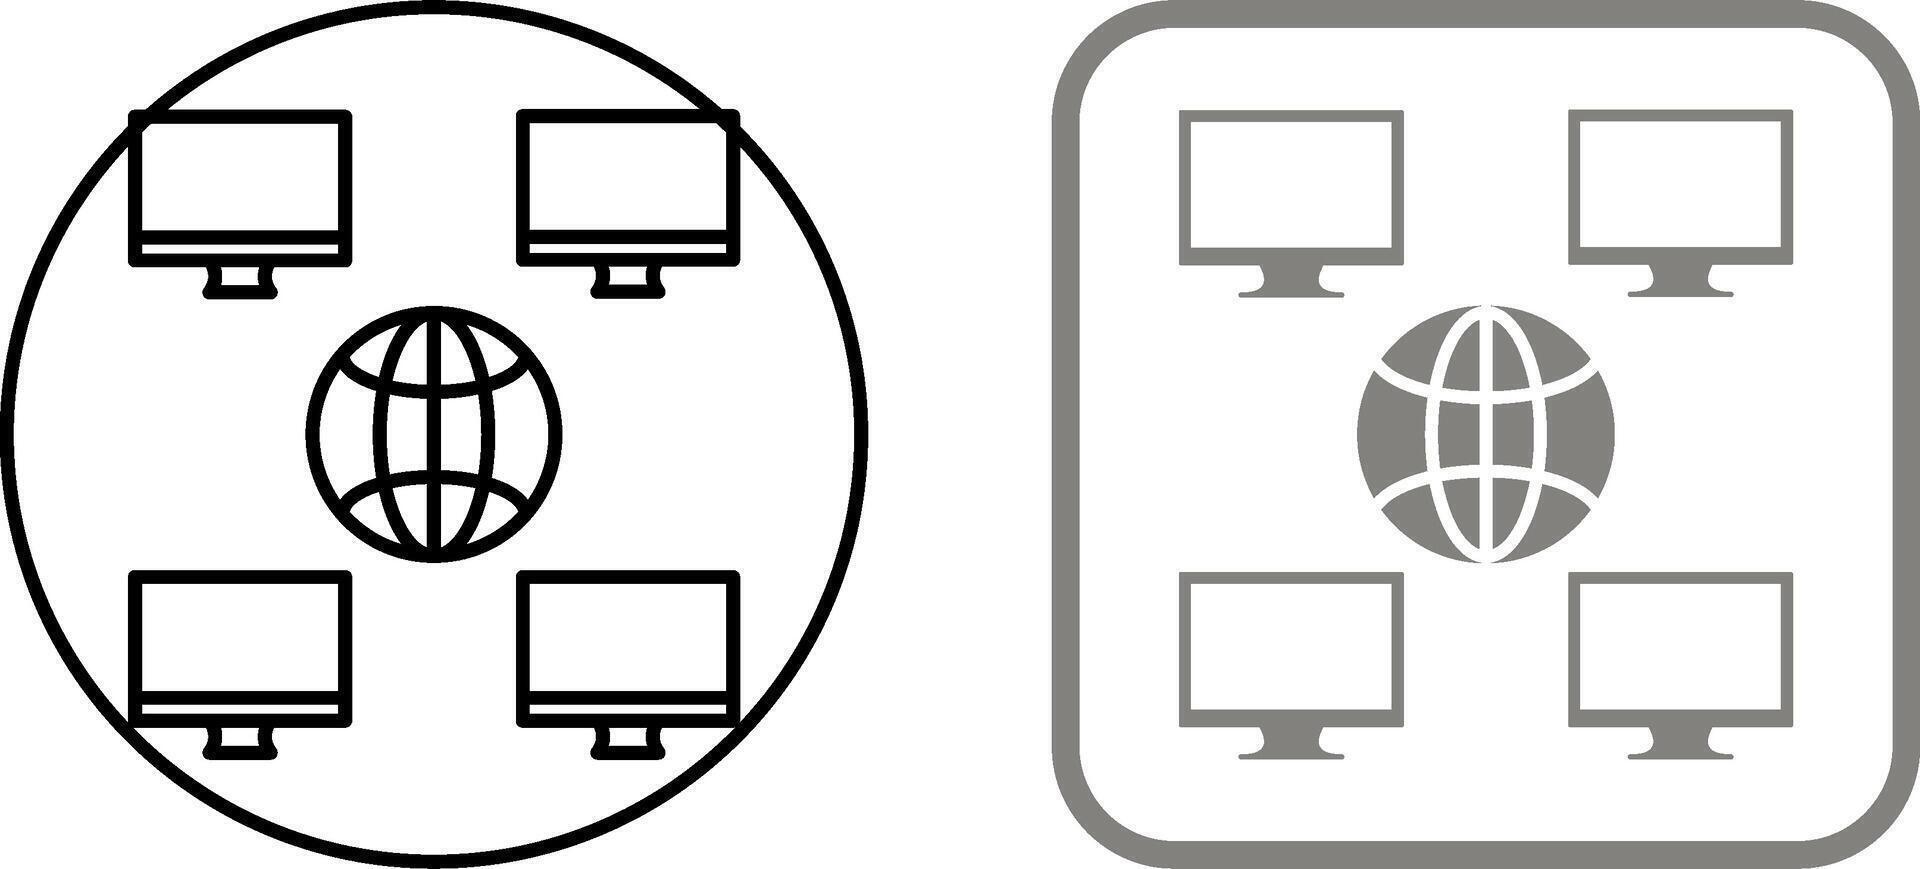 Unique Company Network Icon Design vector